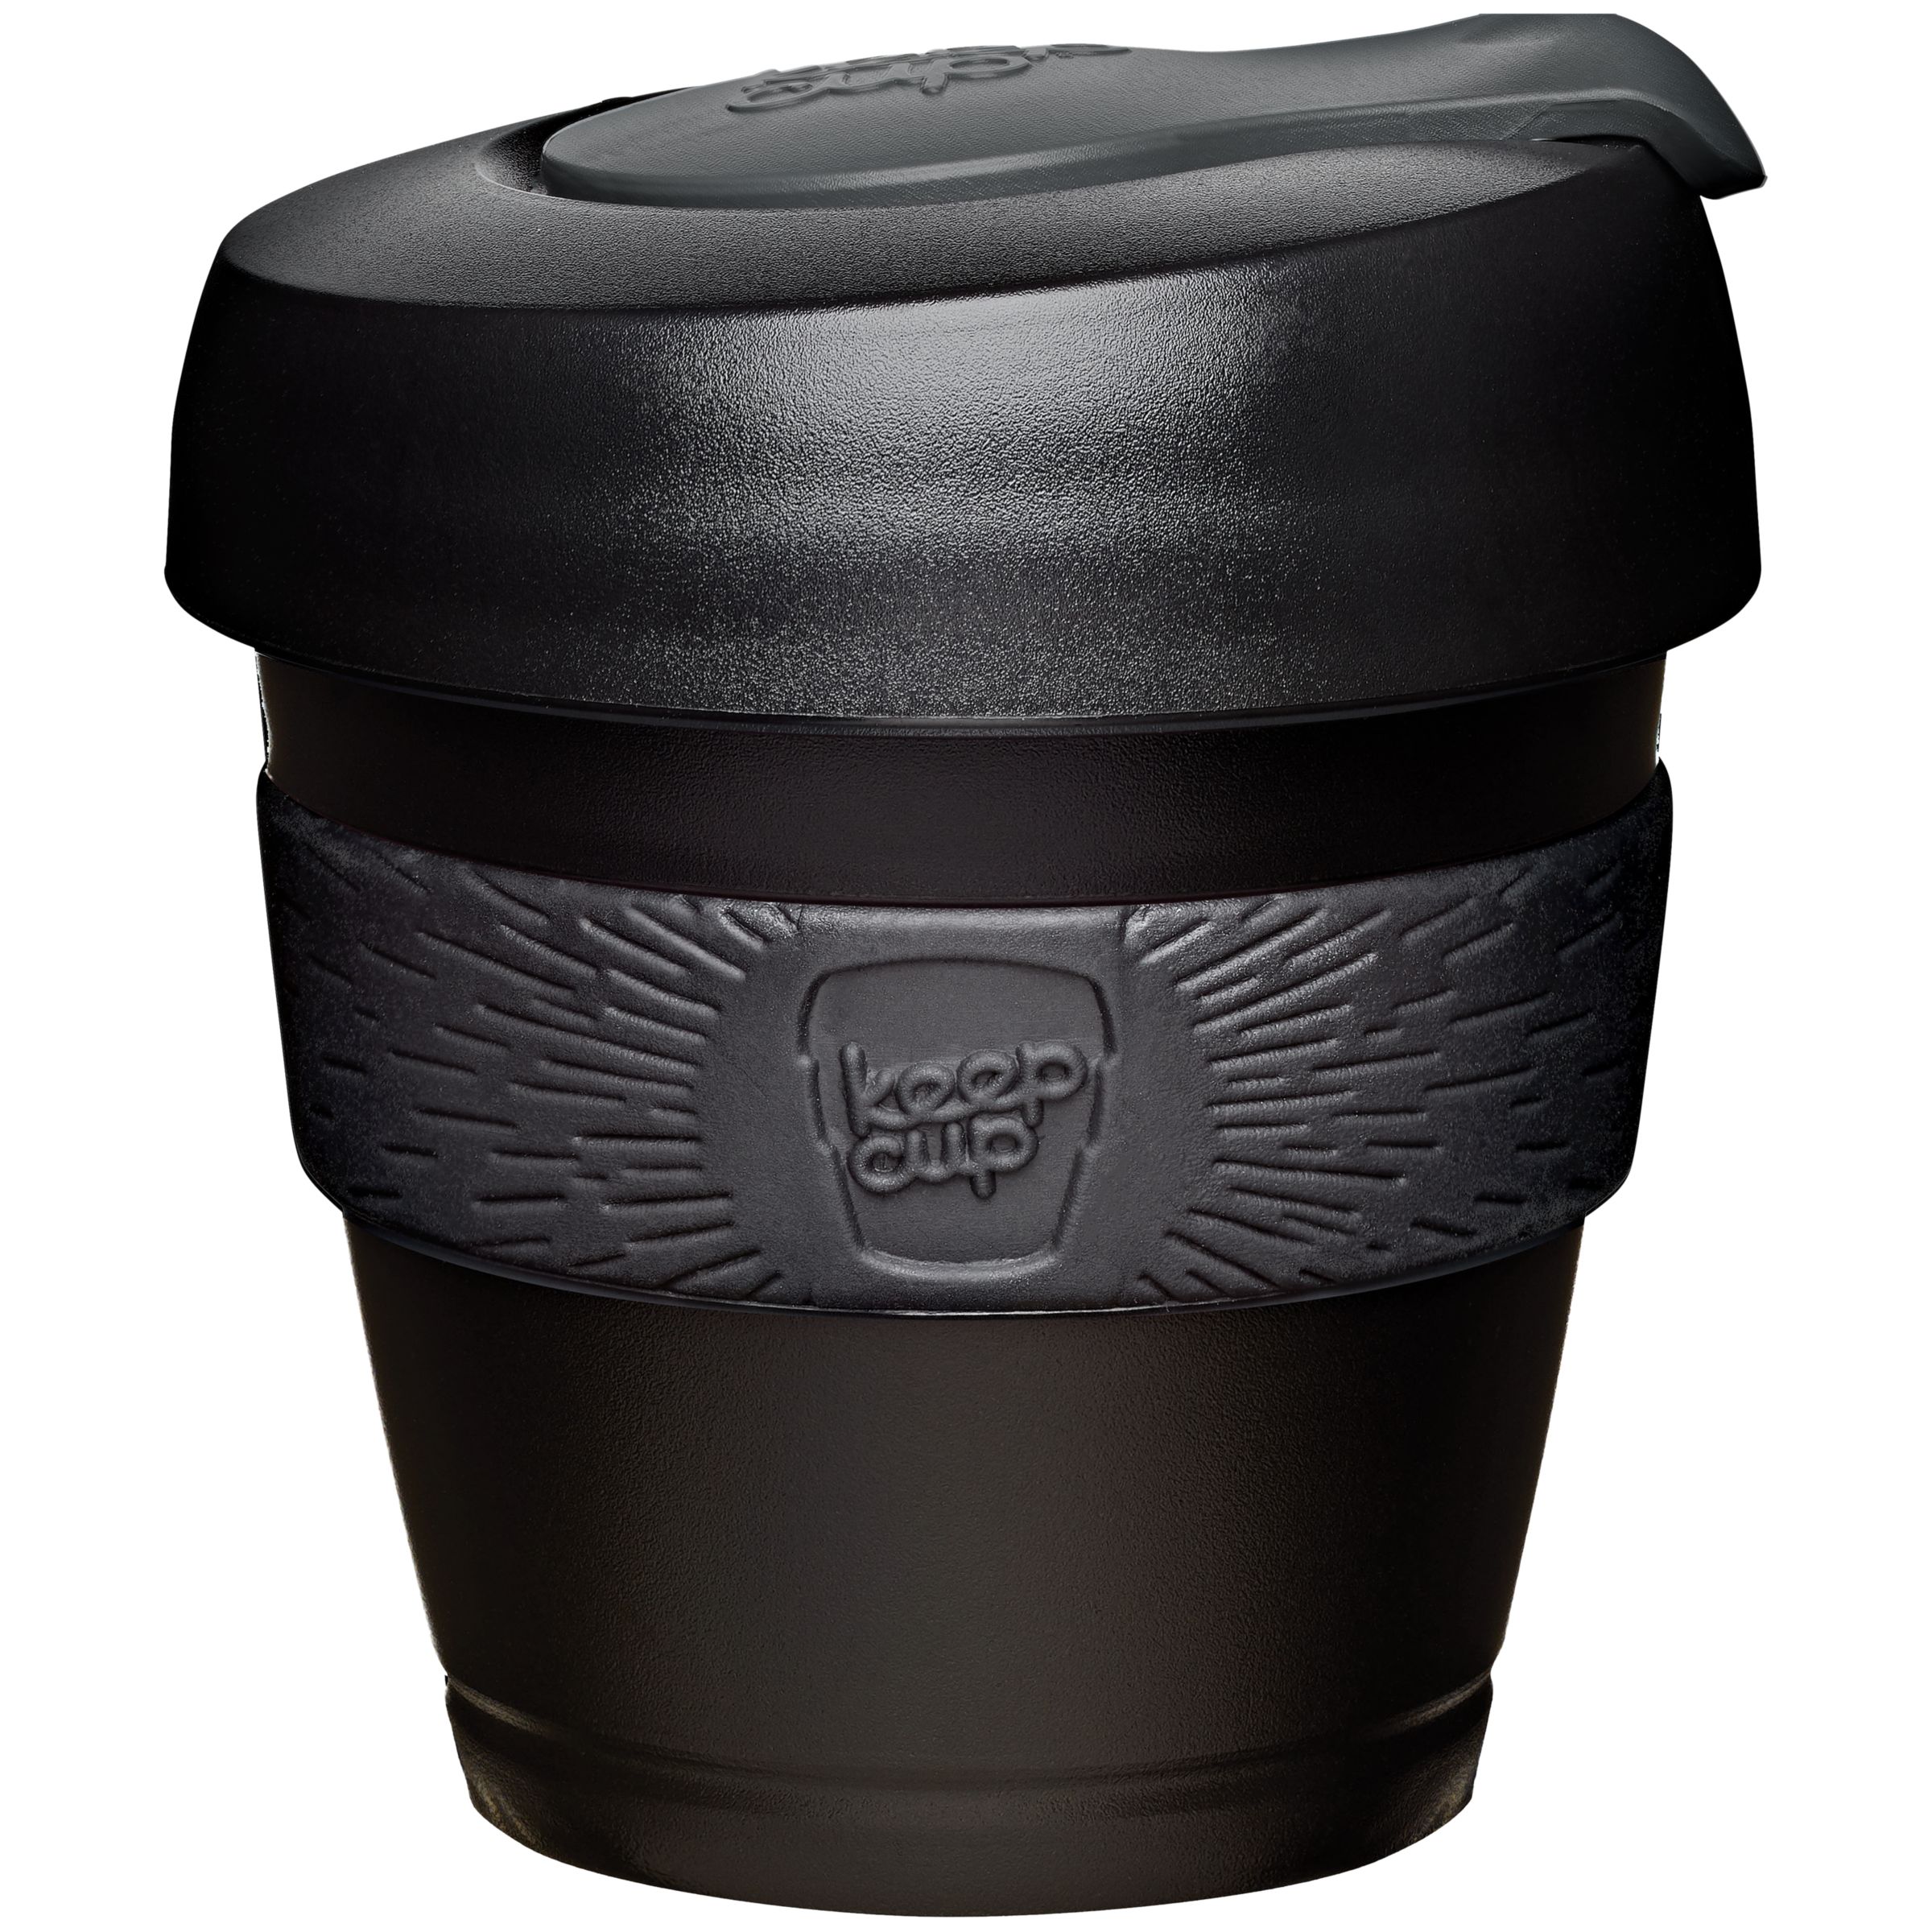 4 oz espresso travel mug